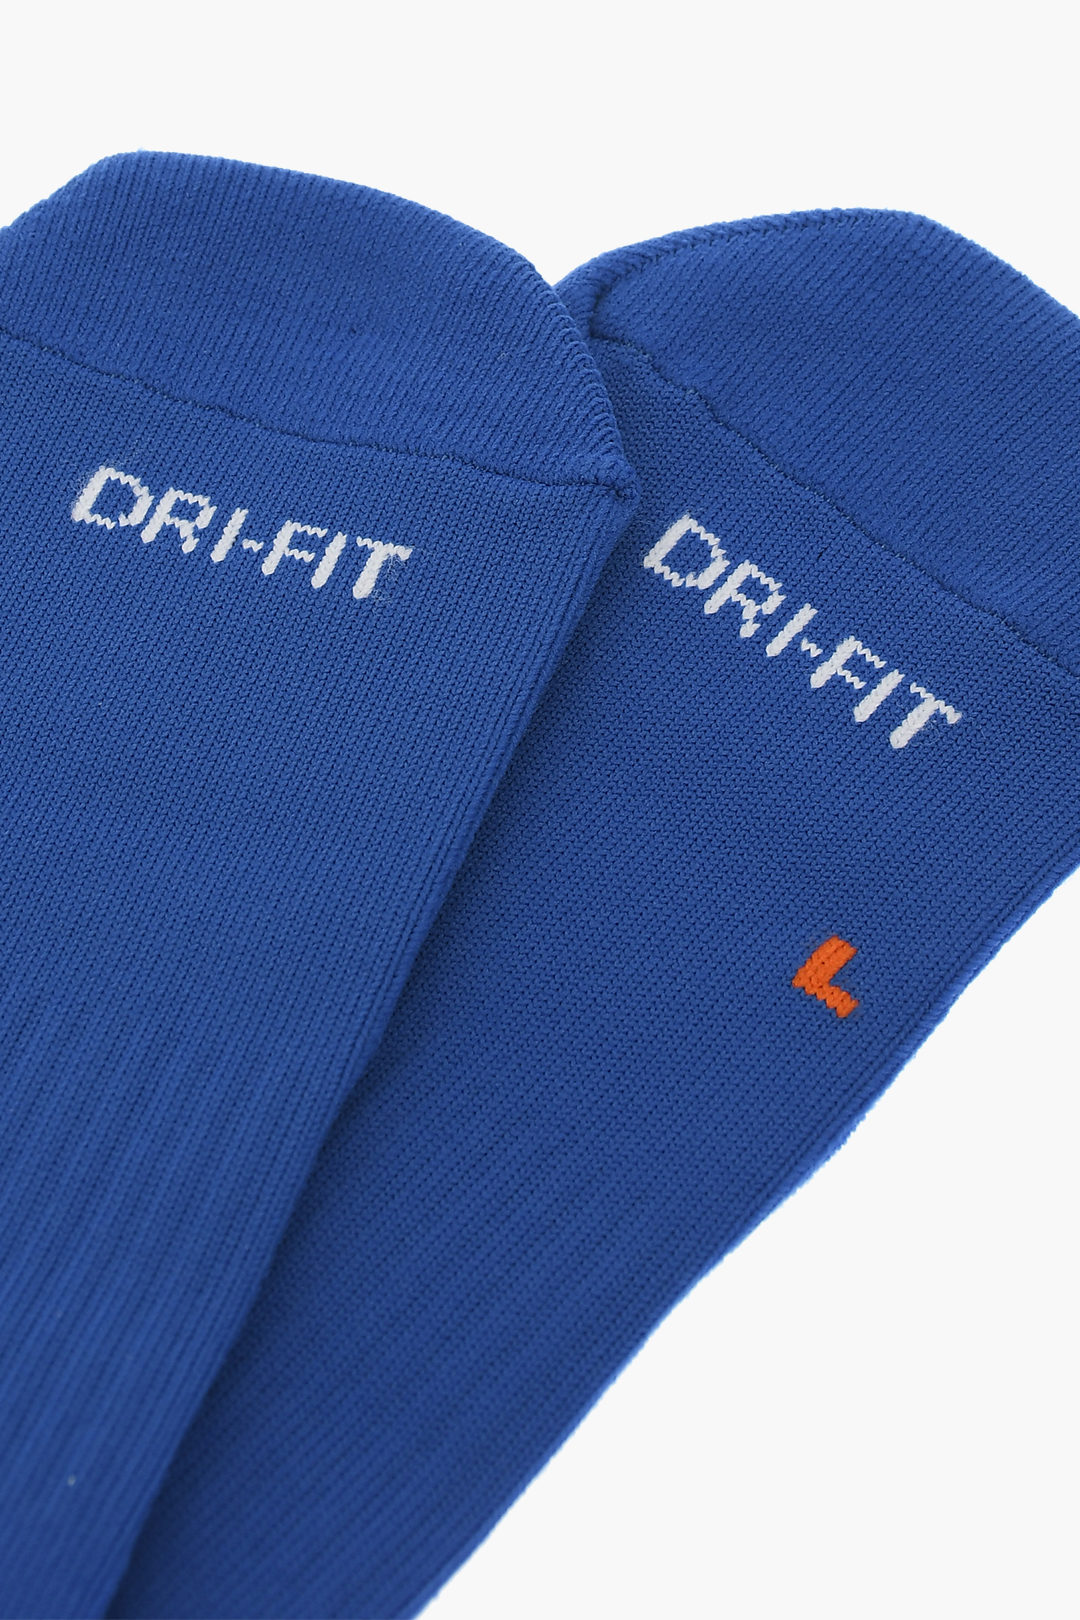 Voorkeur luchthaven overdrijven Nike Logo Embroidered Football Long Socks men - Glamood Outlet